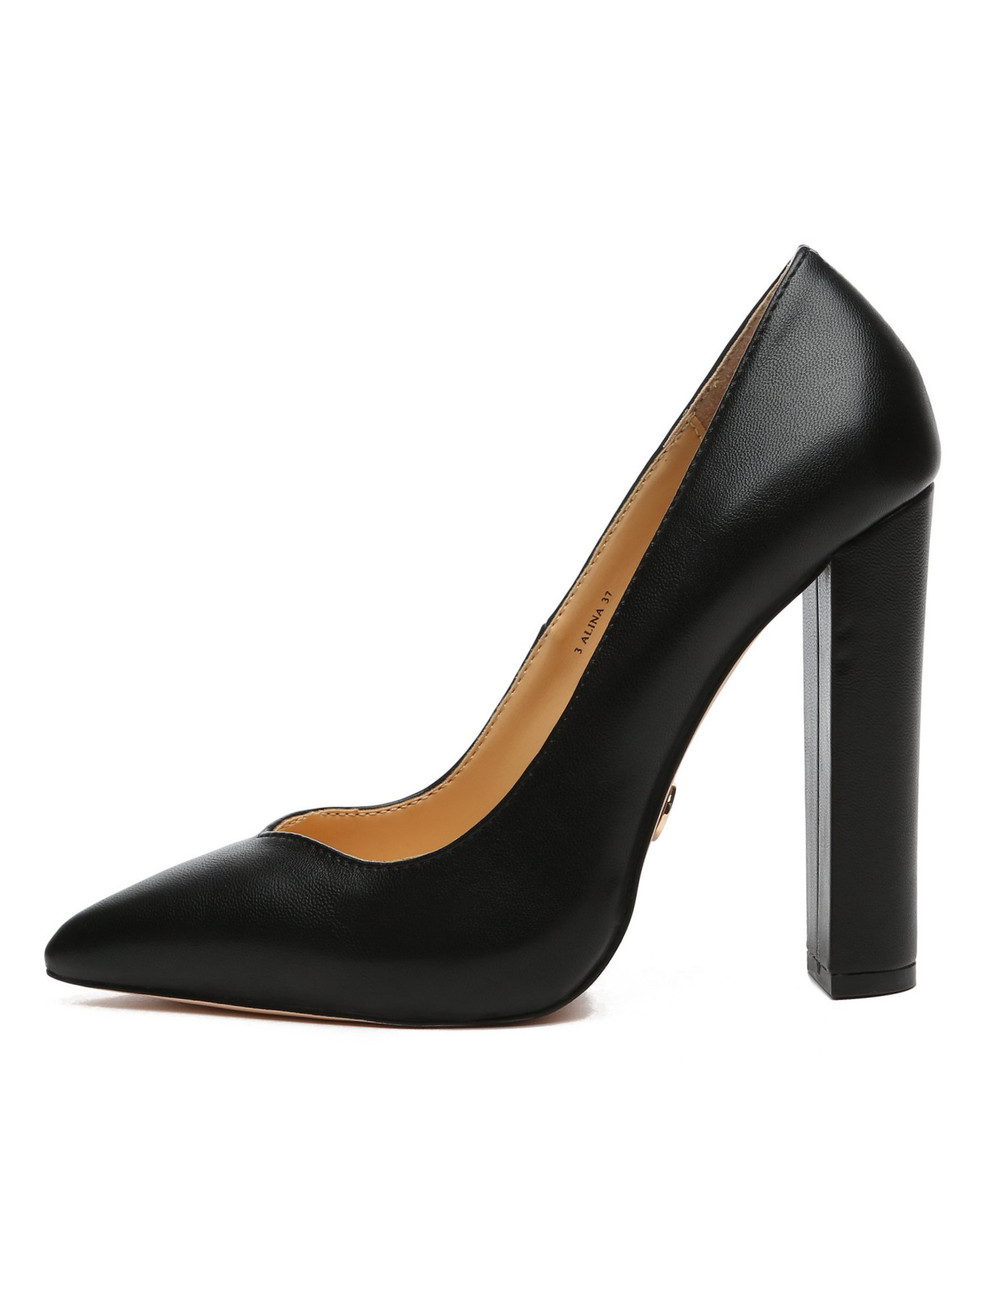 Giaro ALINA BLACK MATTE PUMPS - Shoebidoo Shoes | Giaro high heels